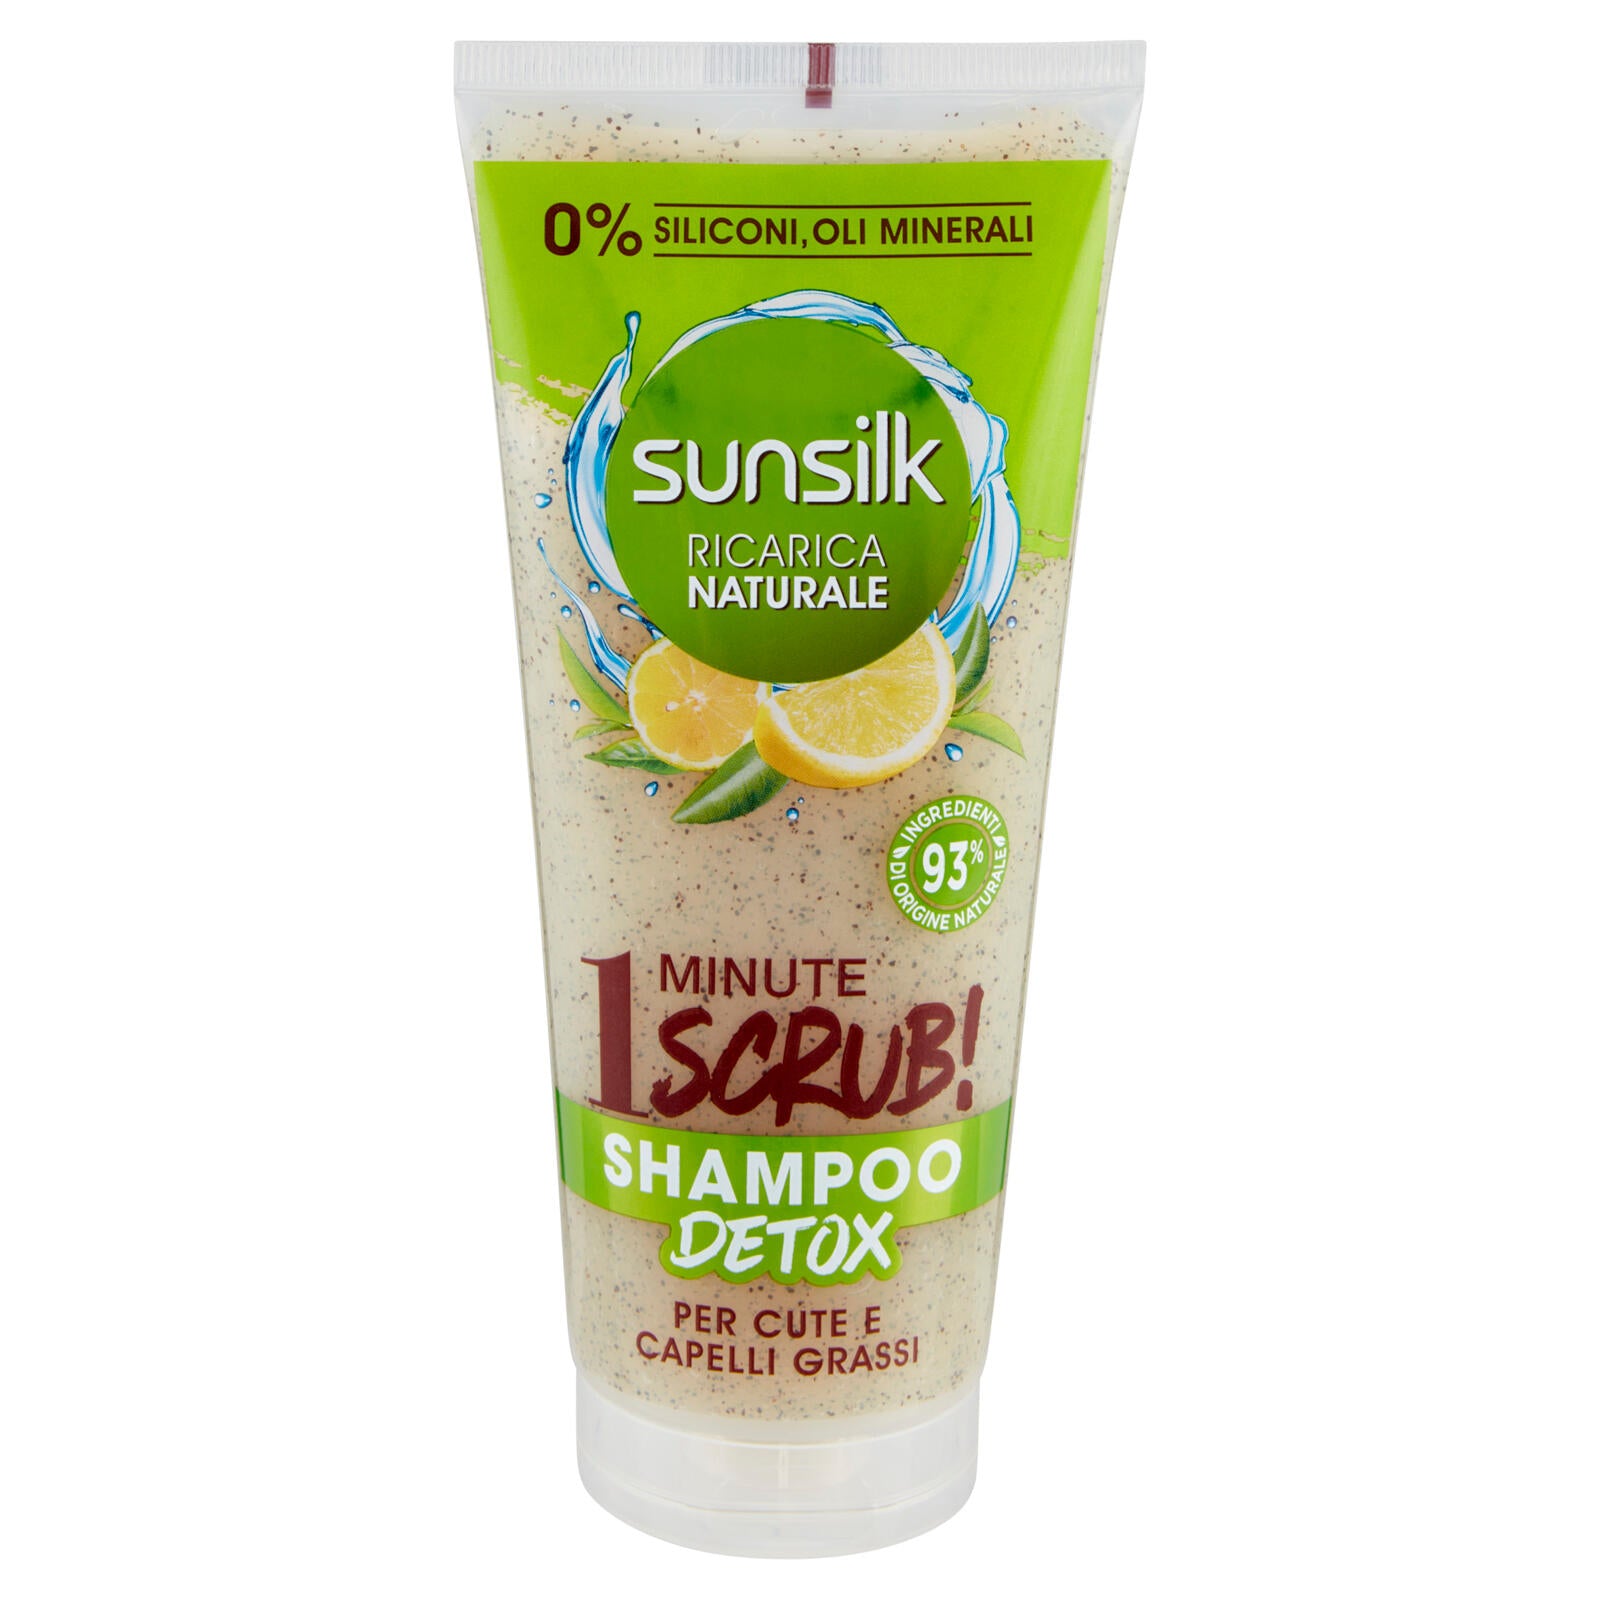 sunsilk Ricarica Naturale 1 Minute Scrub! Shampoo Detox per Cute e Capelli Grassi 200 ml